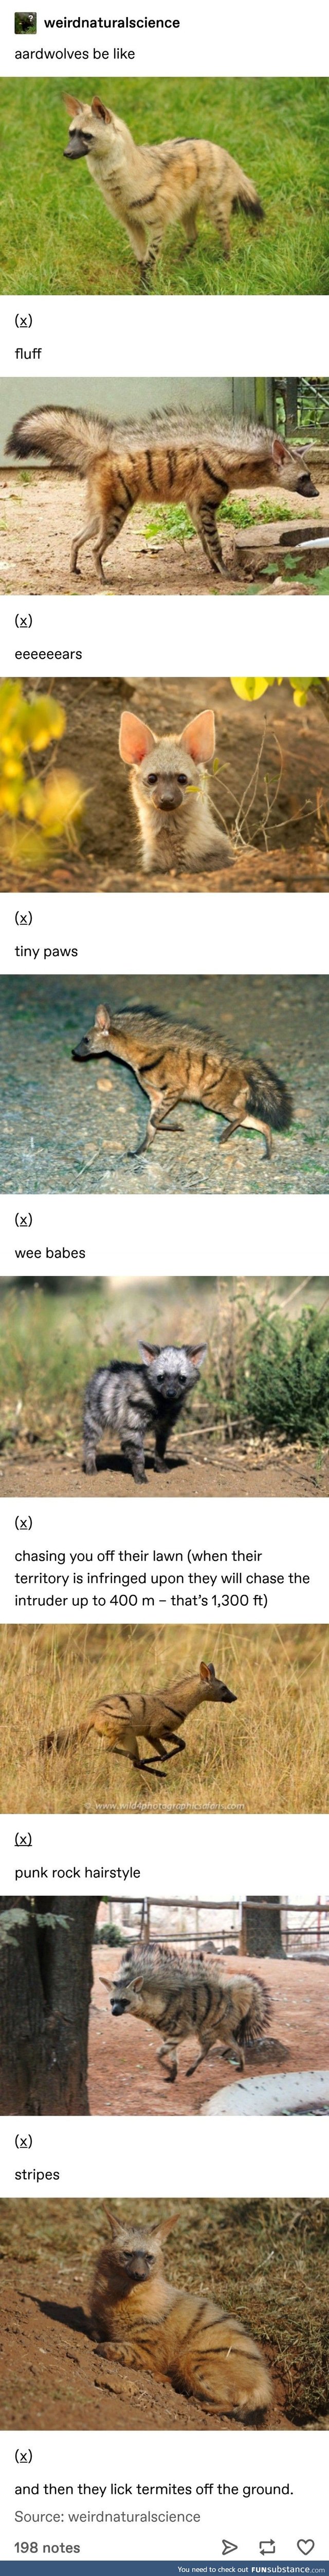 Aardwolves